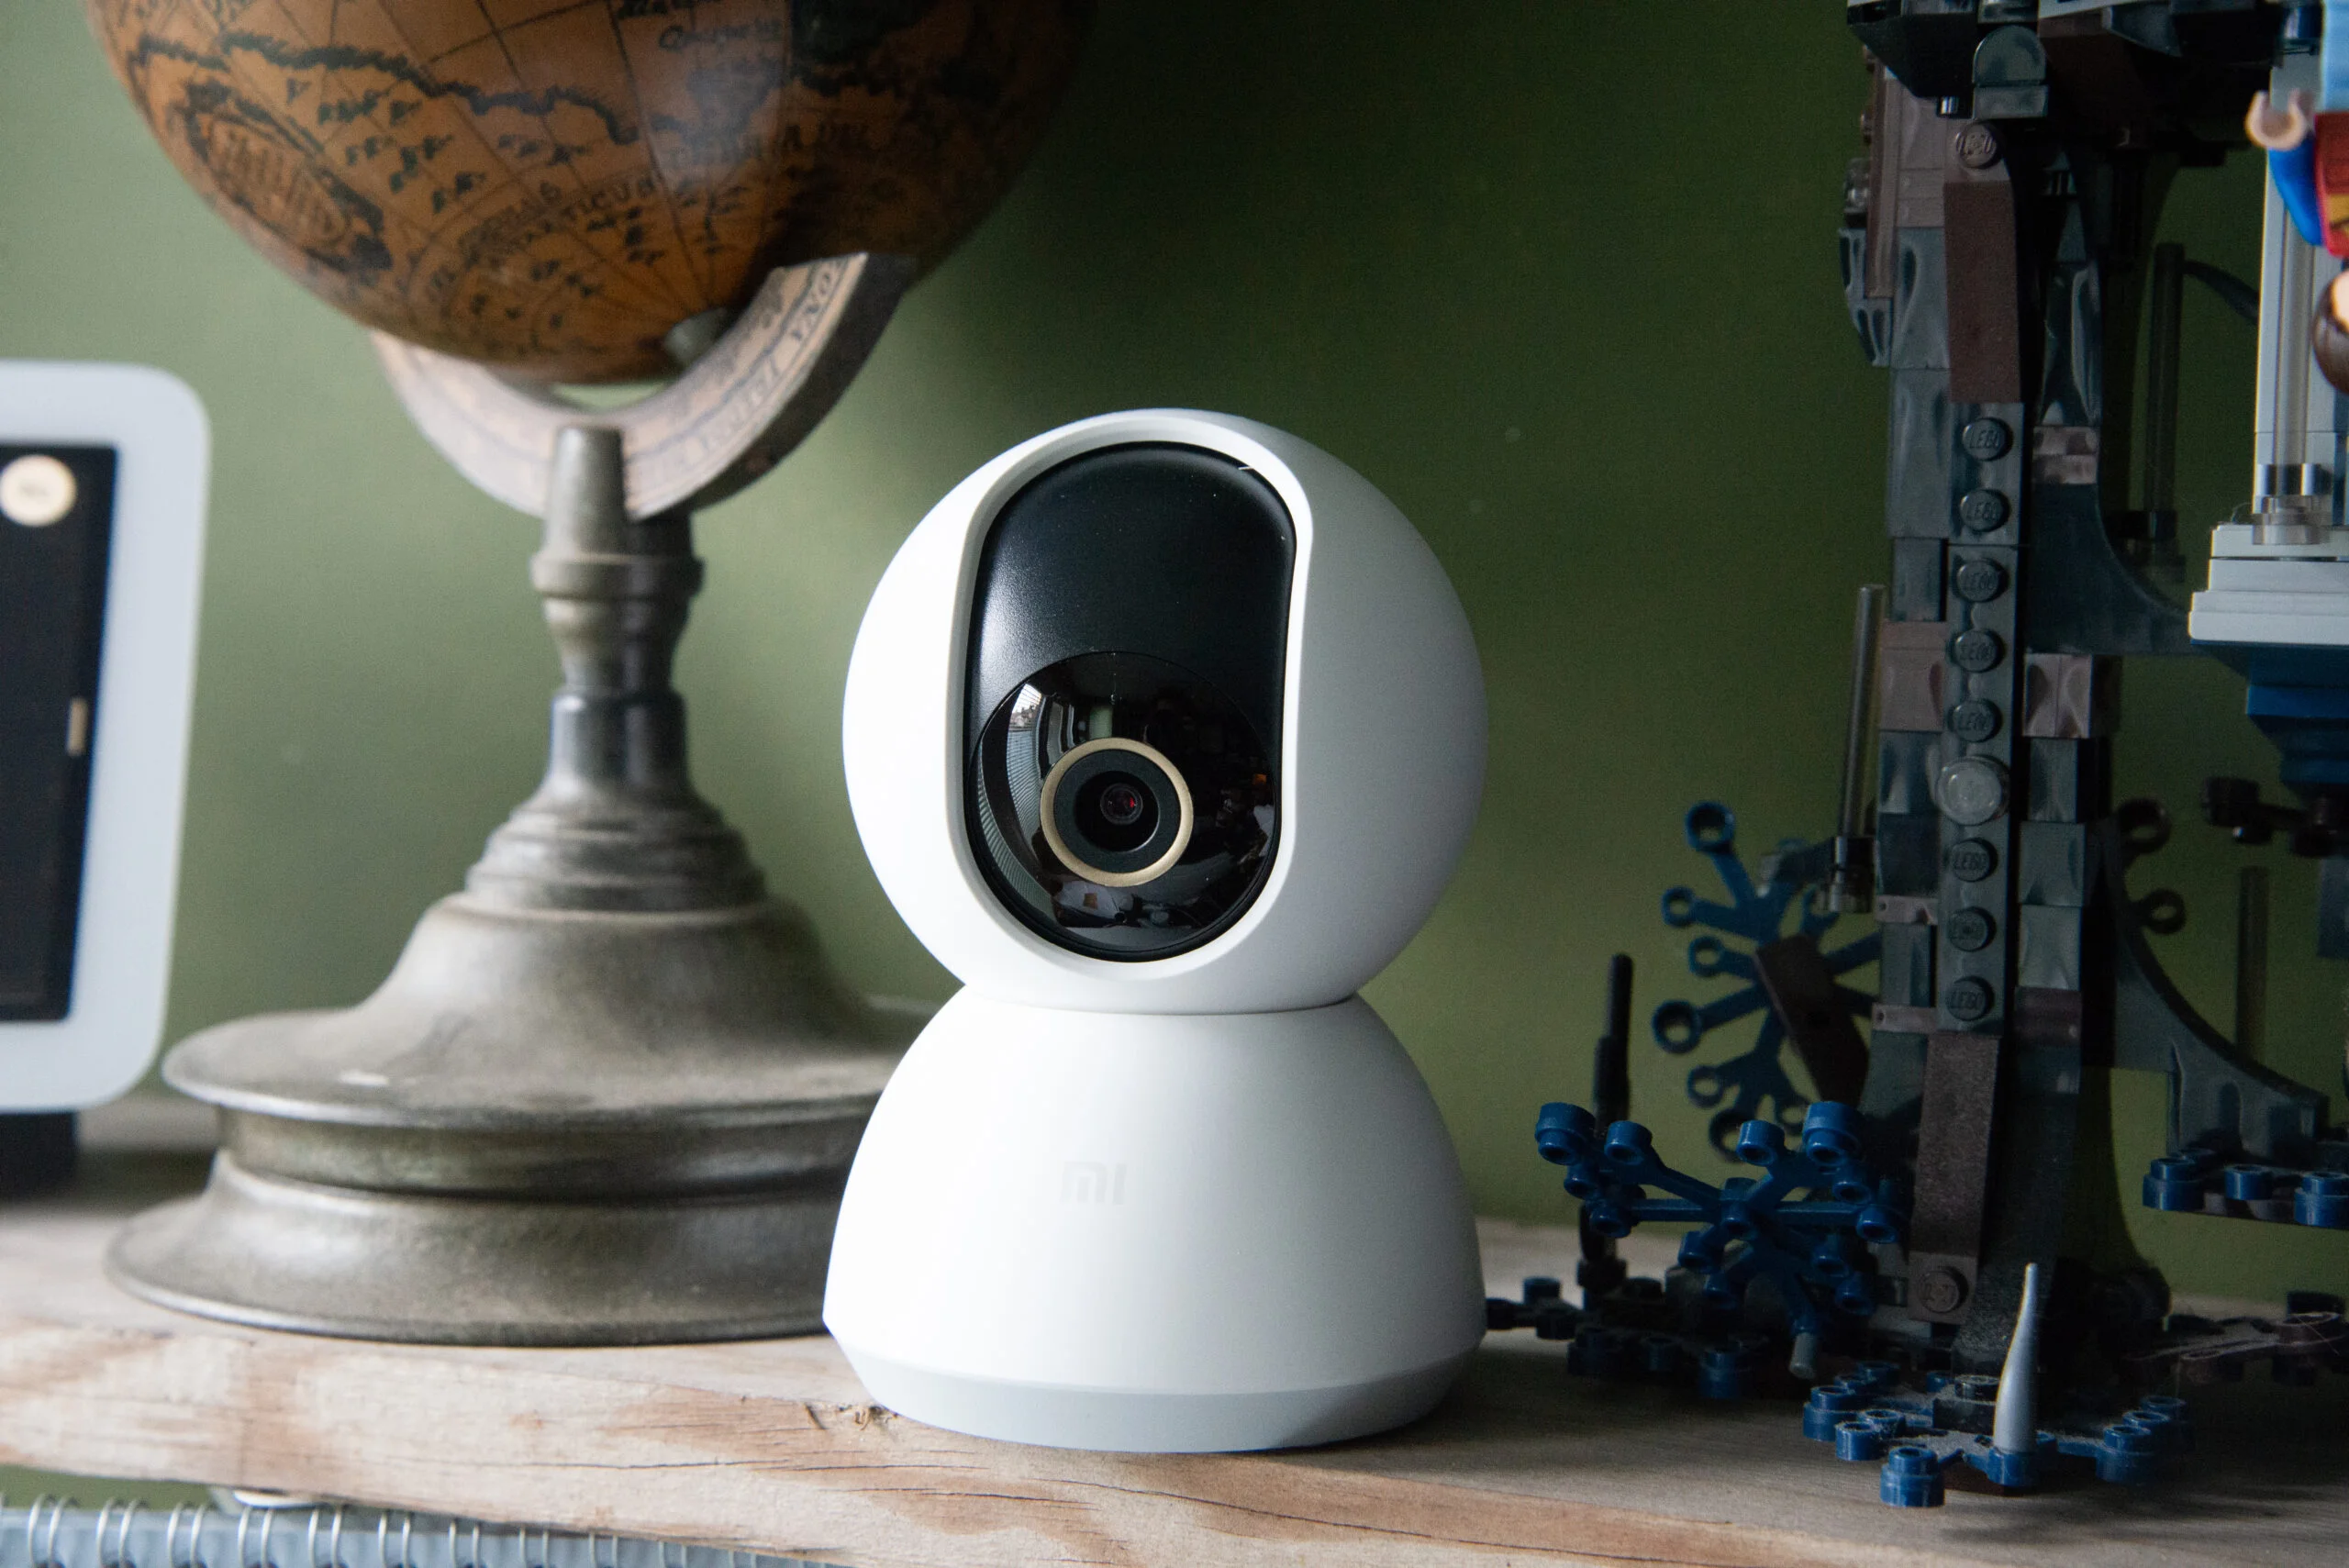 Mi 360° Home Security Camera 2K - Vida Smart Bolivia